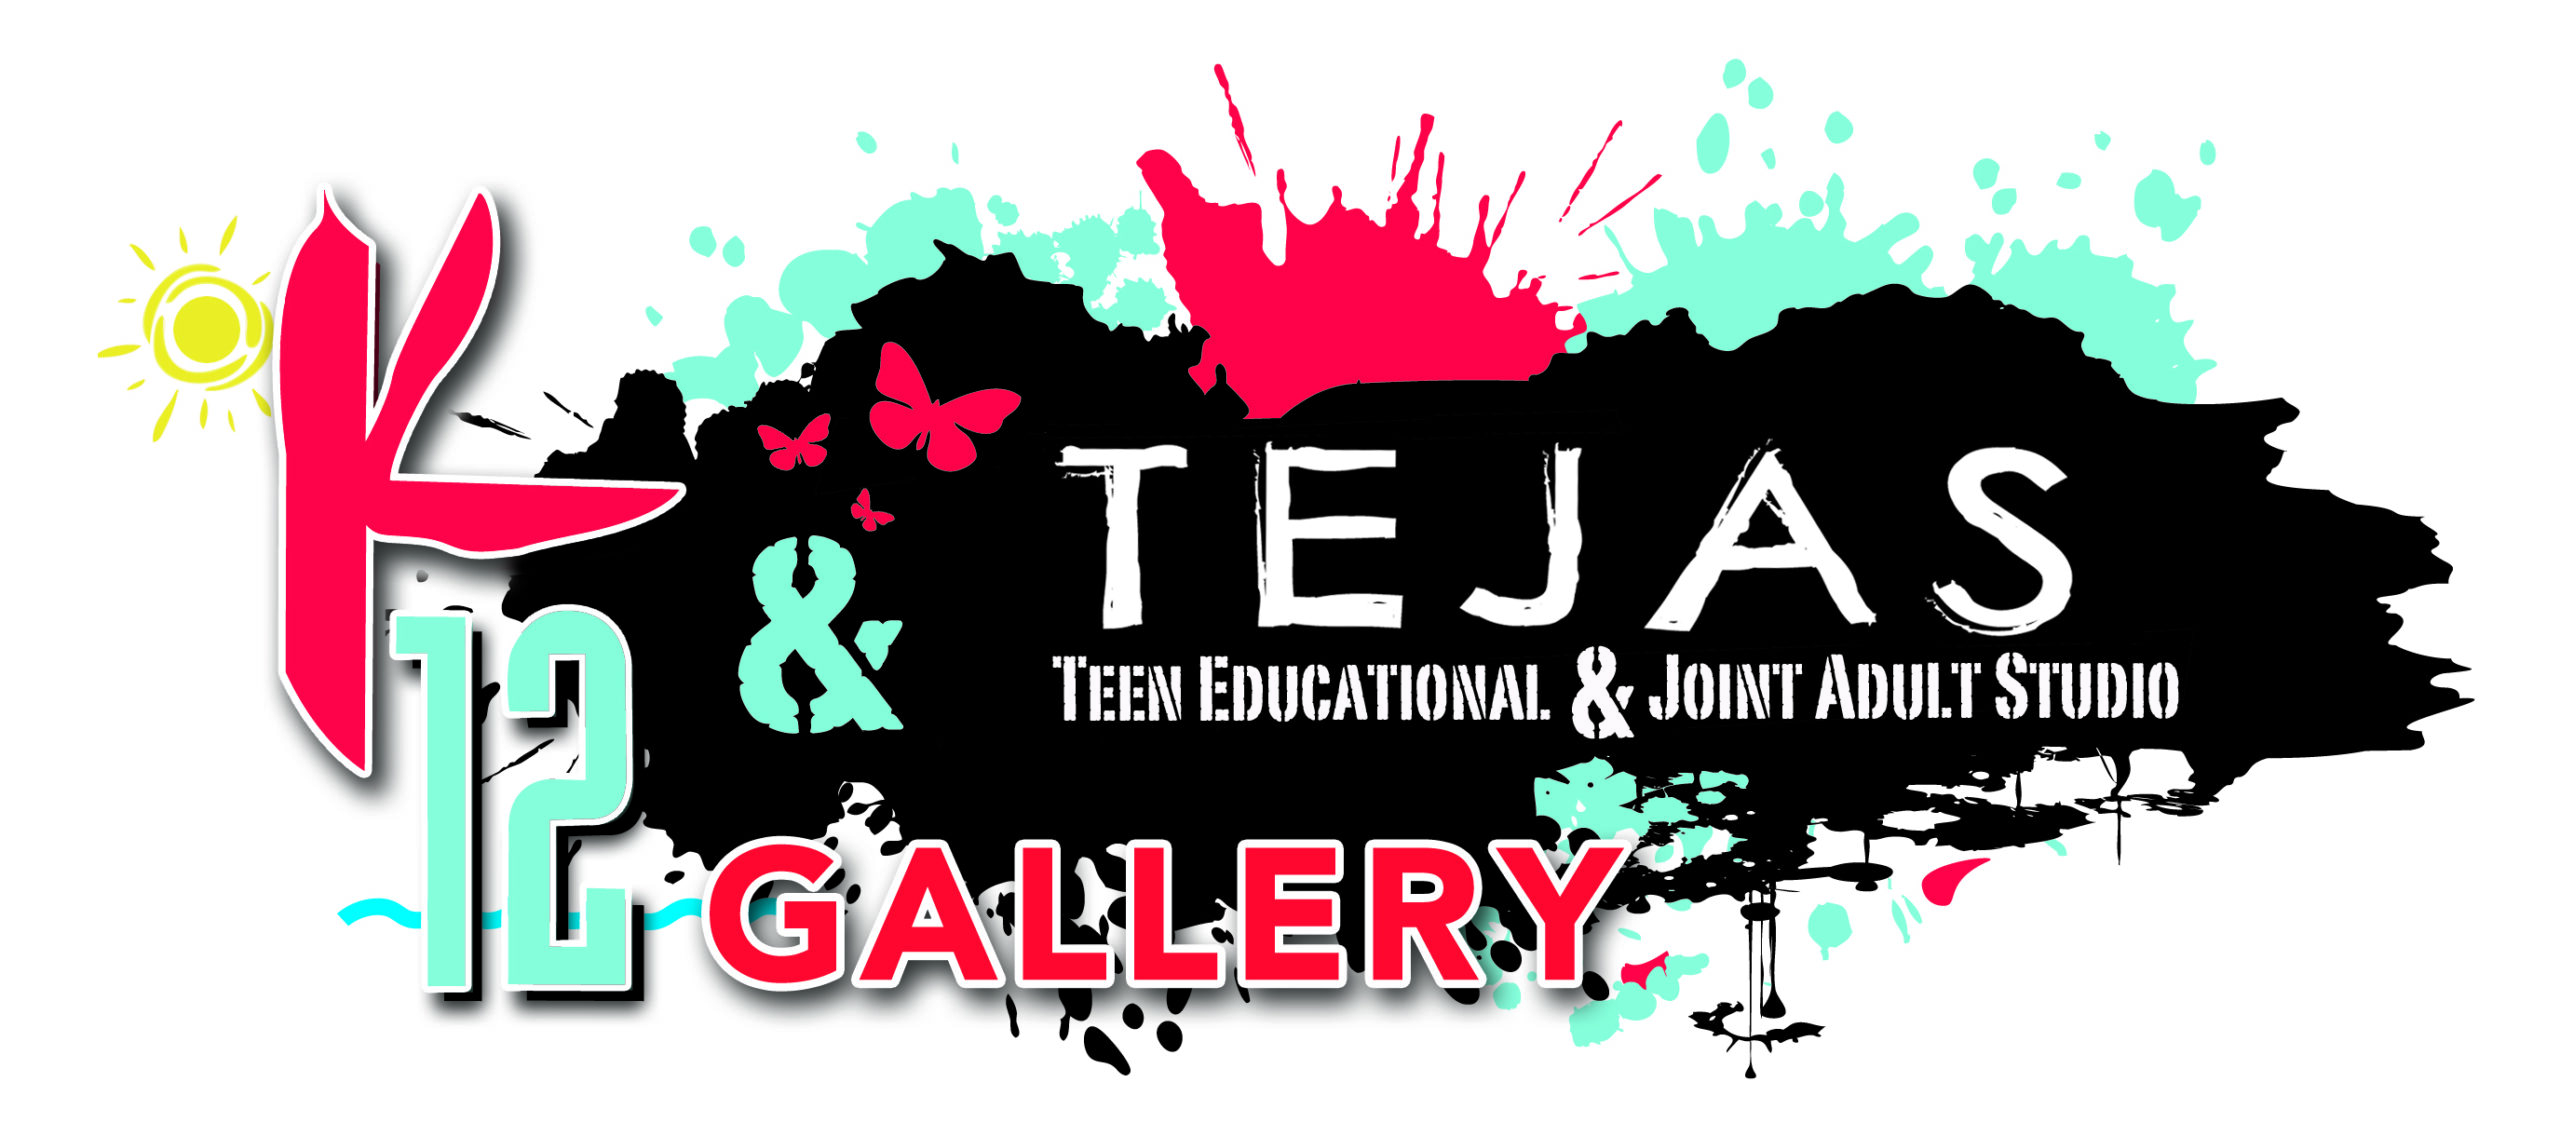 K12 Gallery & TEJAS logo